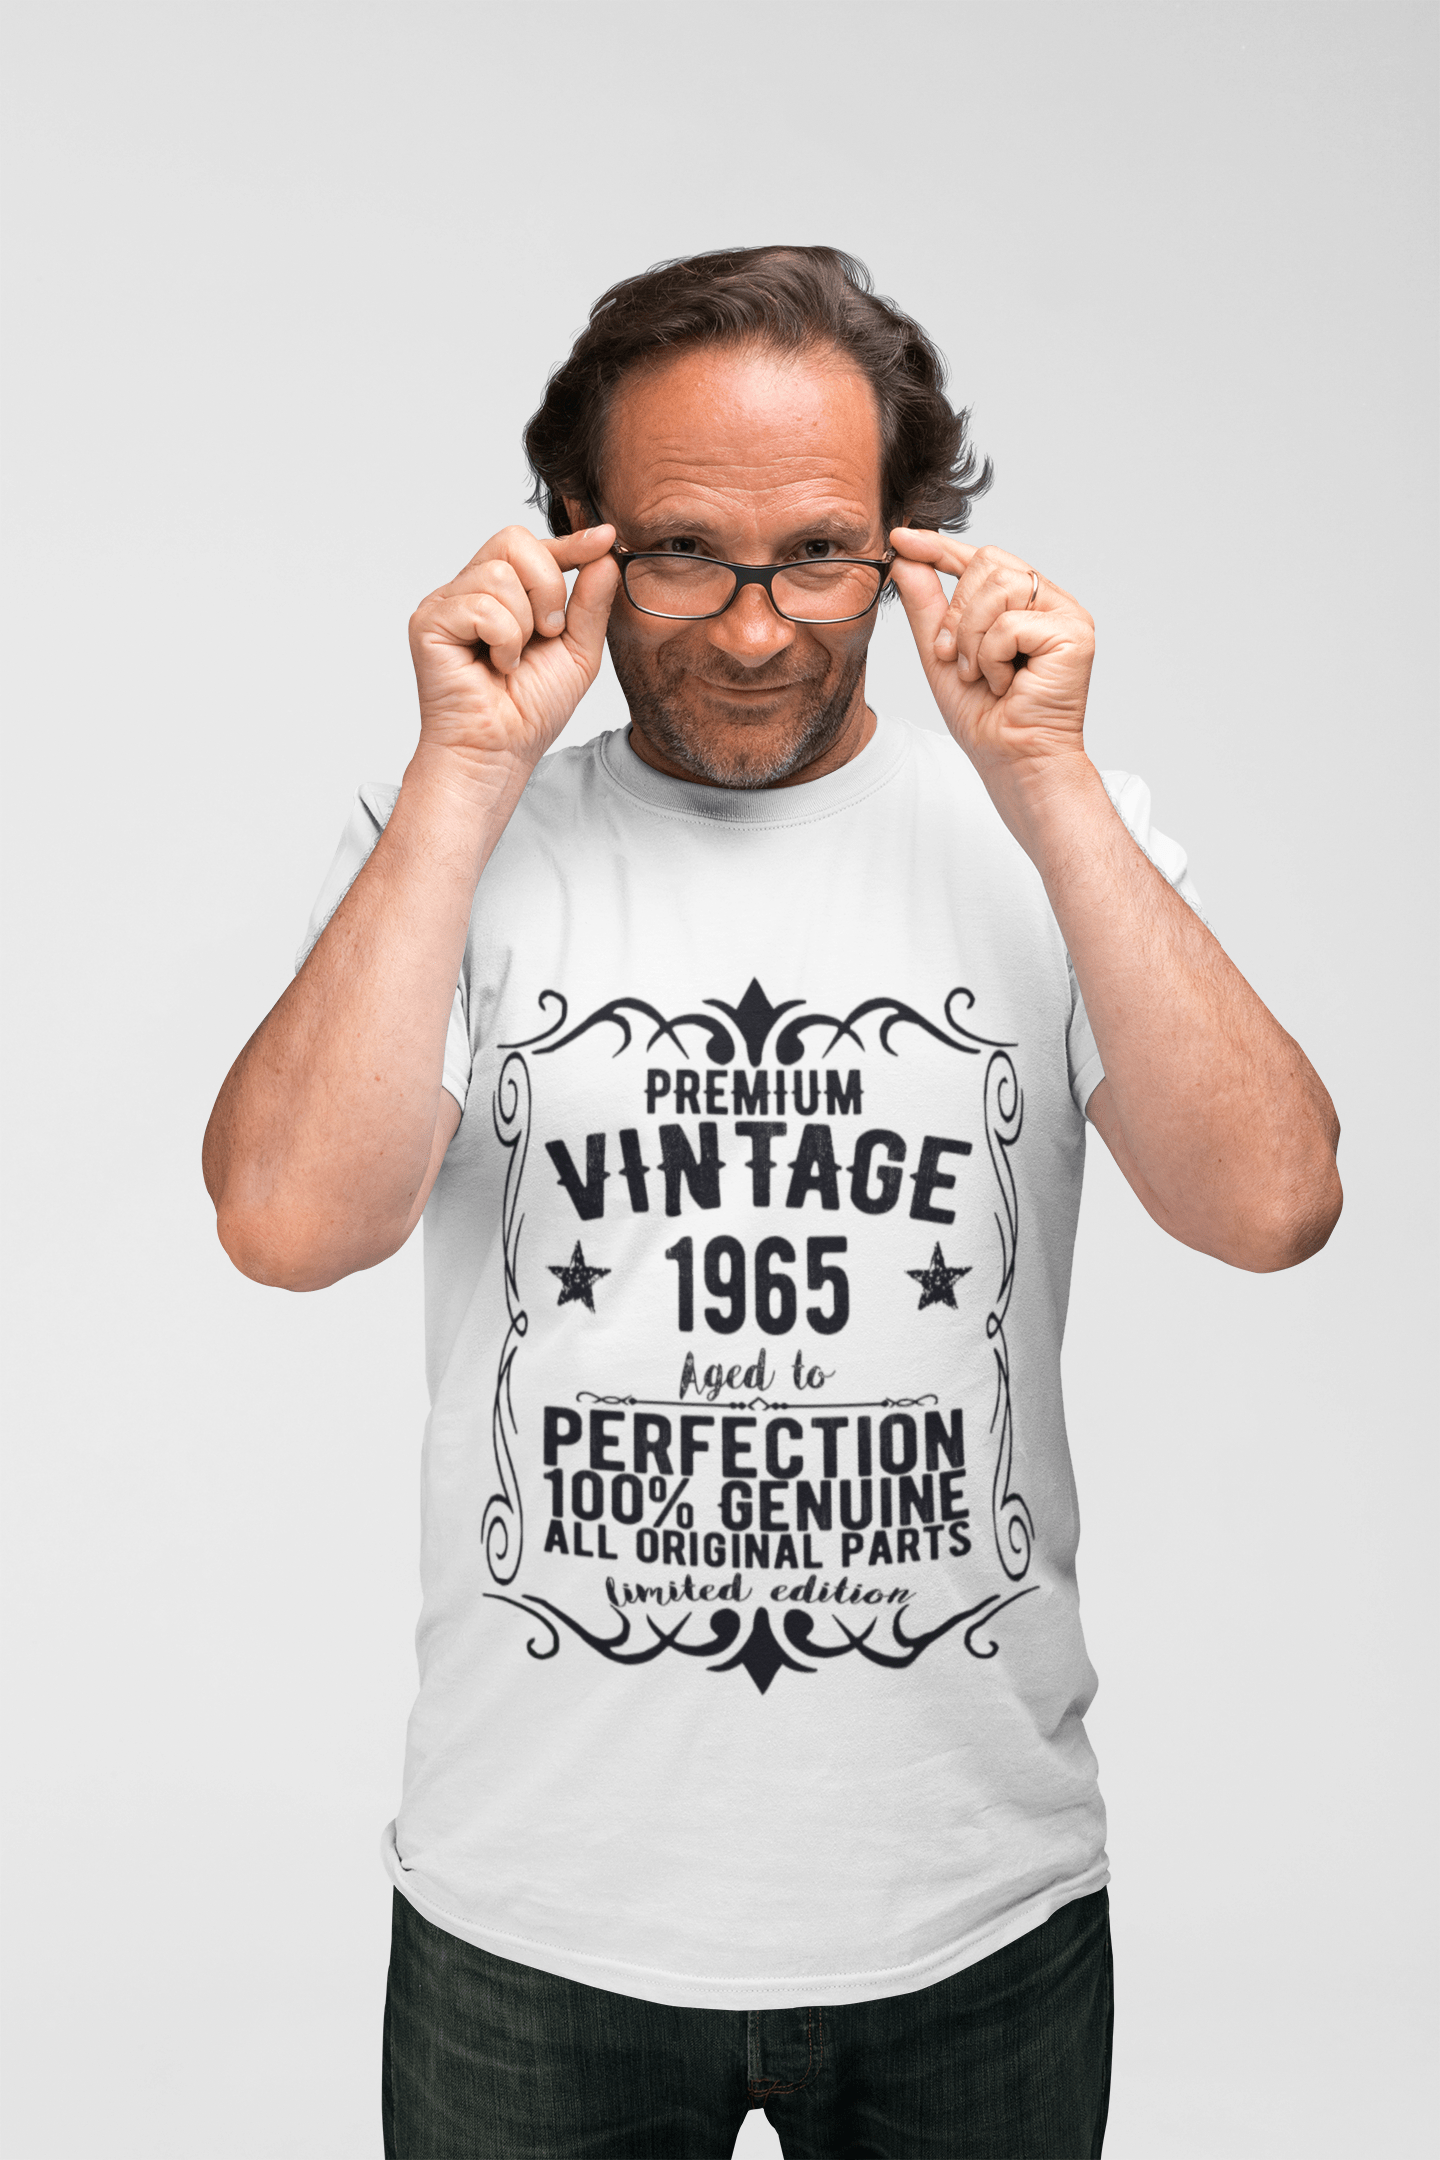 Premium Vintage Jahr 1965, Weiß, Kurzarm-Rundhals-T-Shirt für Herren, Geschenk-T-Shirt 00349